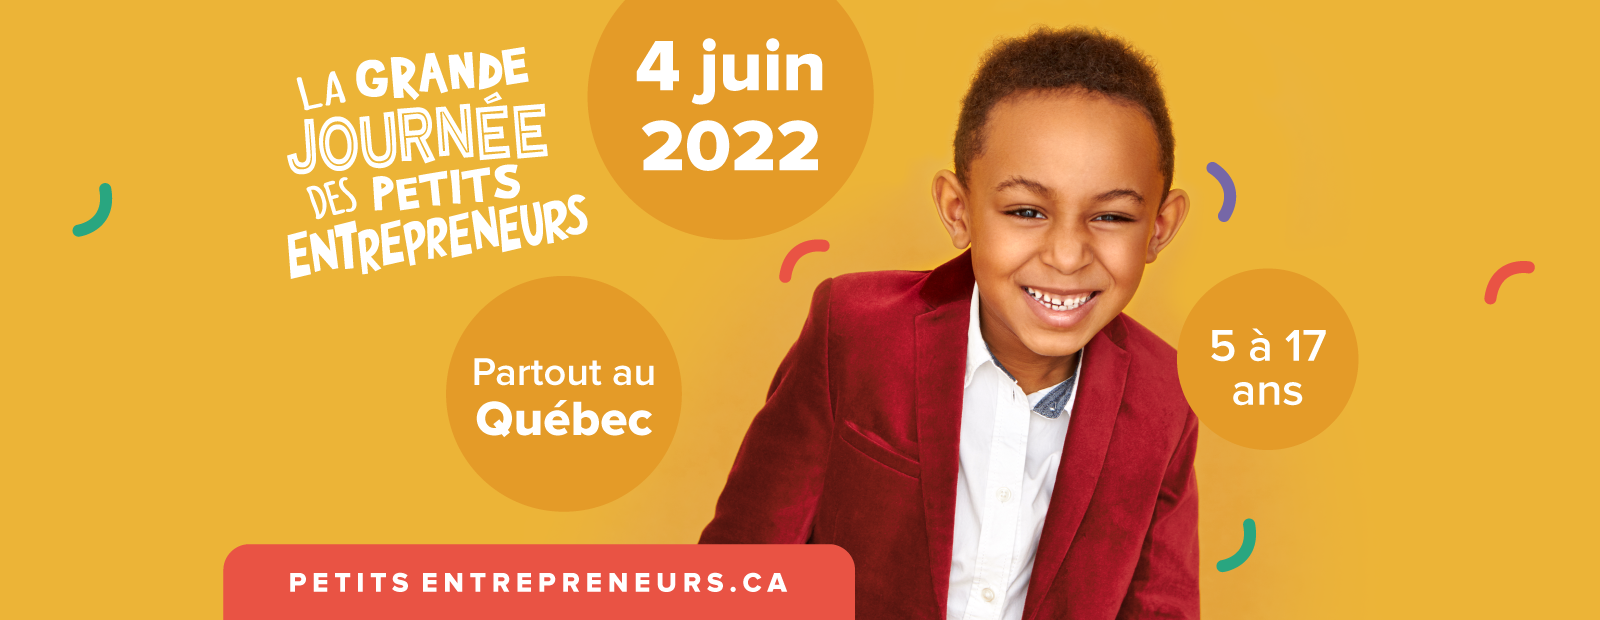 La Grande journée des petits entrepreneurs  sera de retour le 4 juin 2022 ! – 9e édition